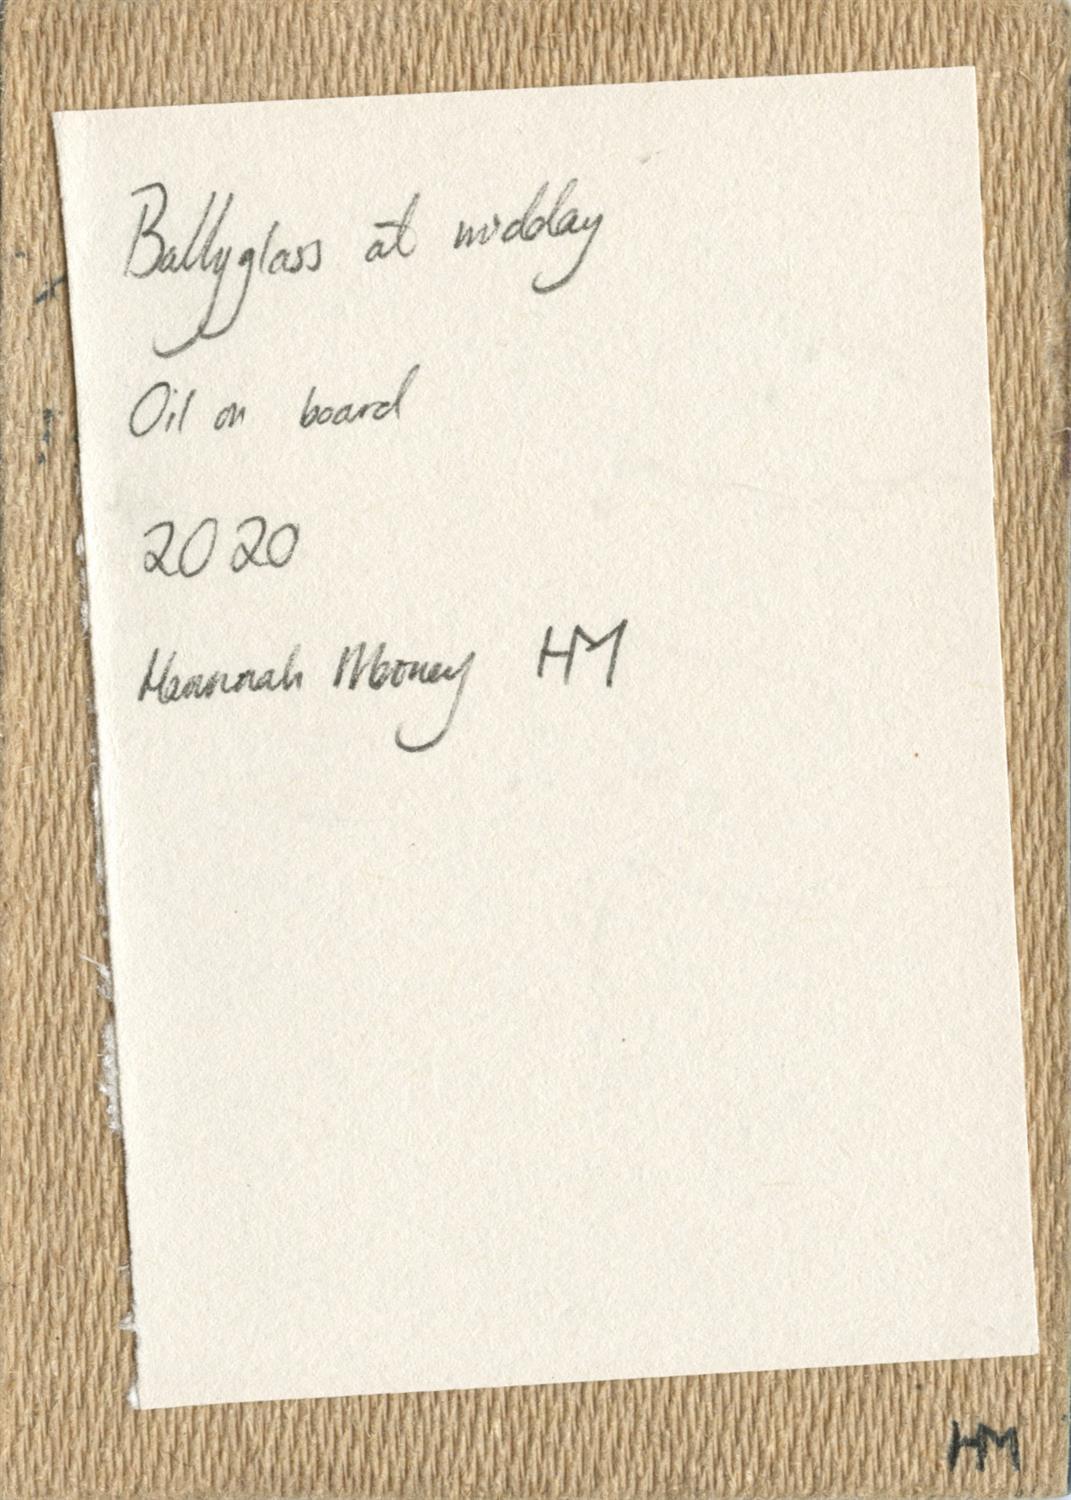 Hannah Mooney, Ballyglass at Midday, 2021 - Image 2 of 3